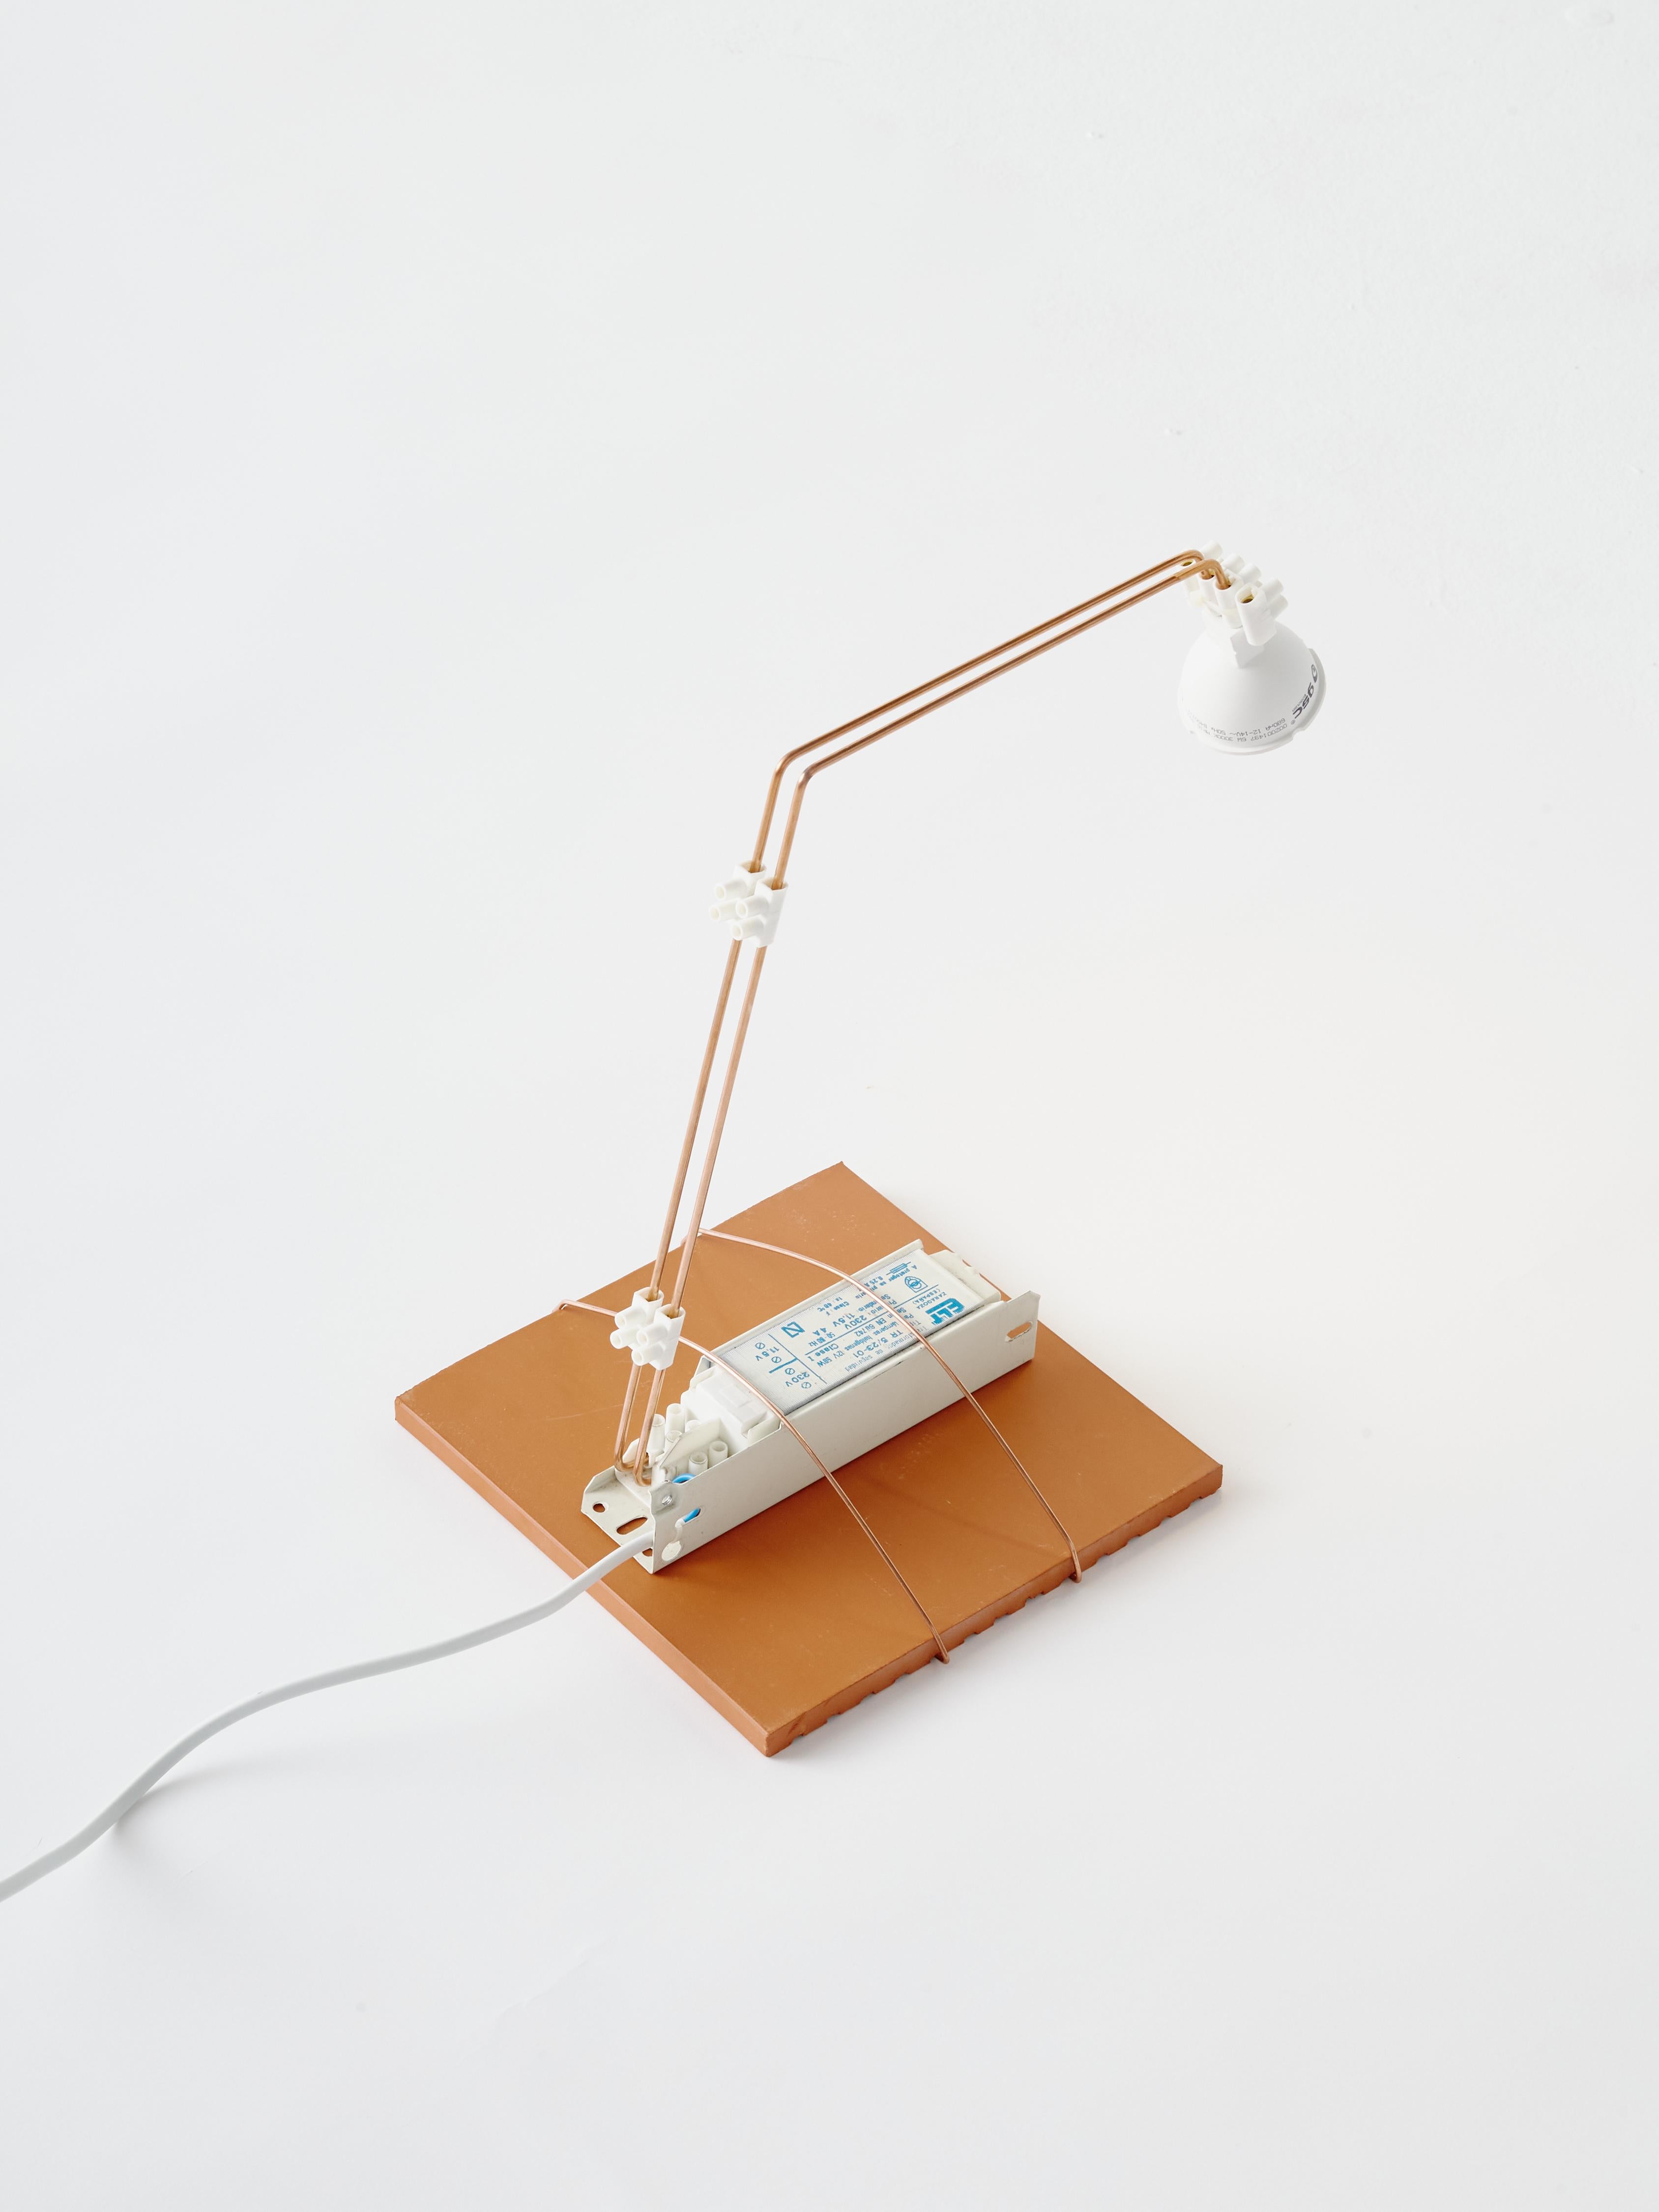 B.A.R.E 'Small Simple' Table Lamp ist ein Stück aus der Serie Brick, Appliances, Rods and Electricity (B.A.R.E). Diese Lampenkollektion wird mit Ziegeln oder Fliesen auf den Sockeln hergestellt, aus denen Eisenstabstrukturen und elektrische